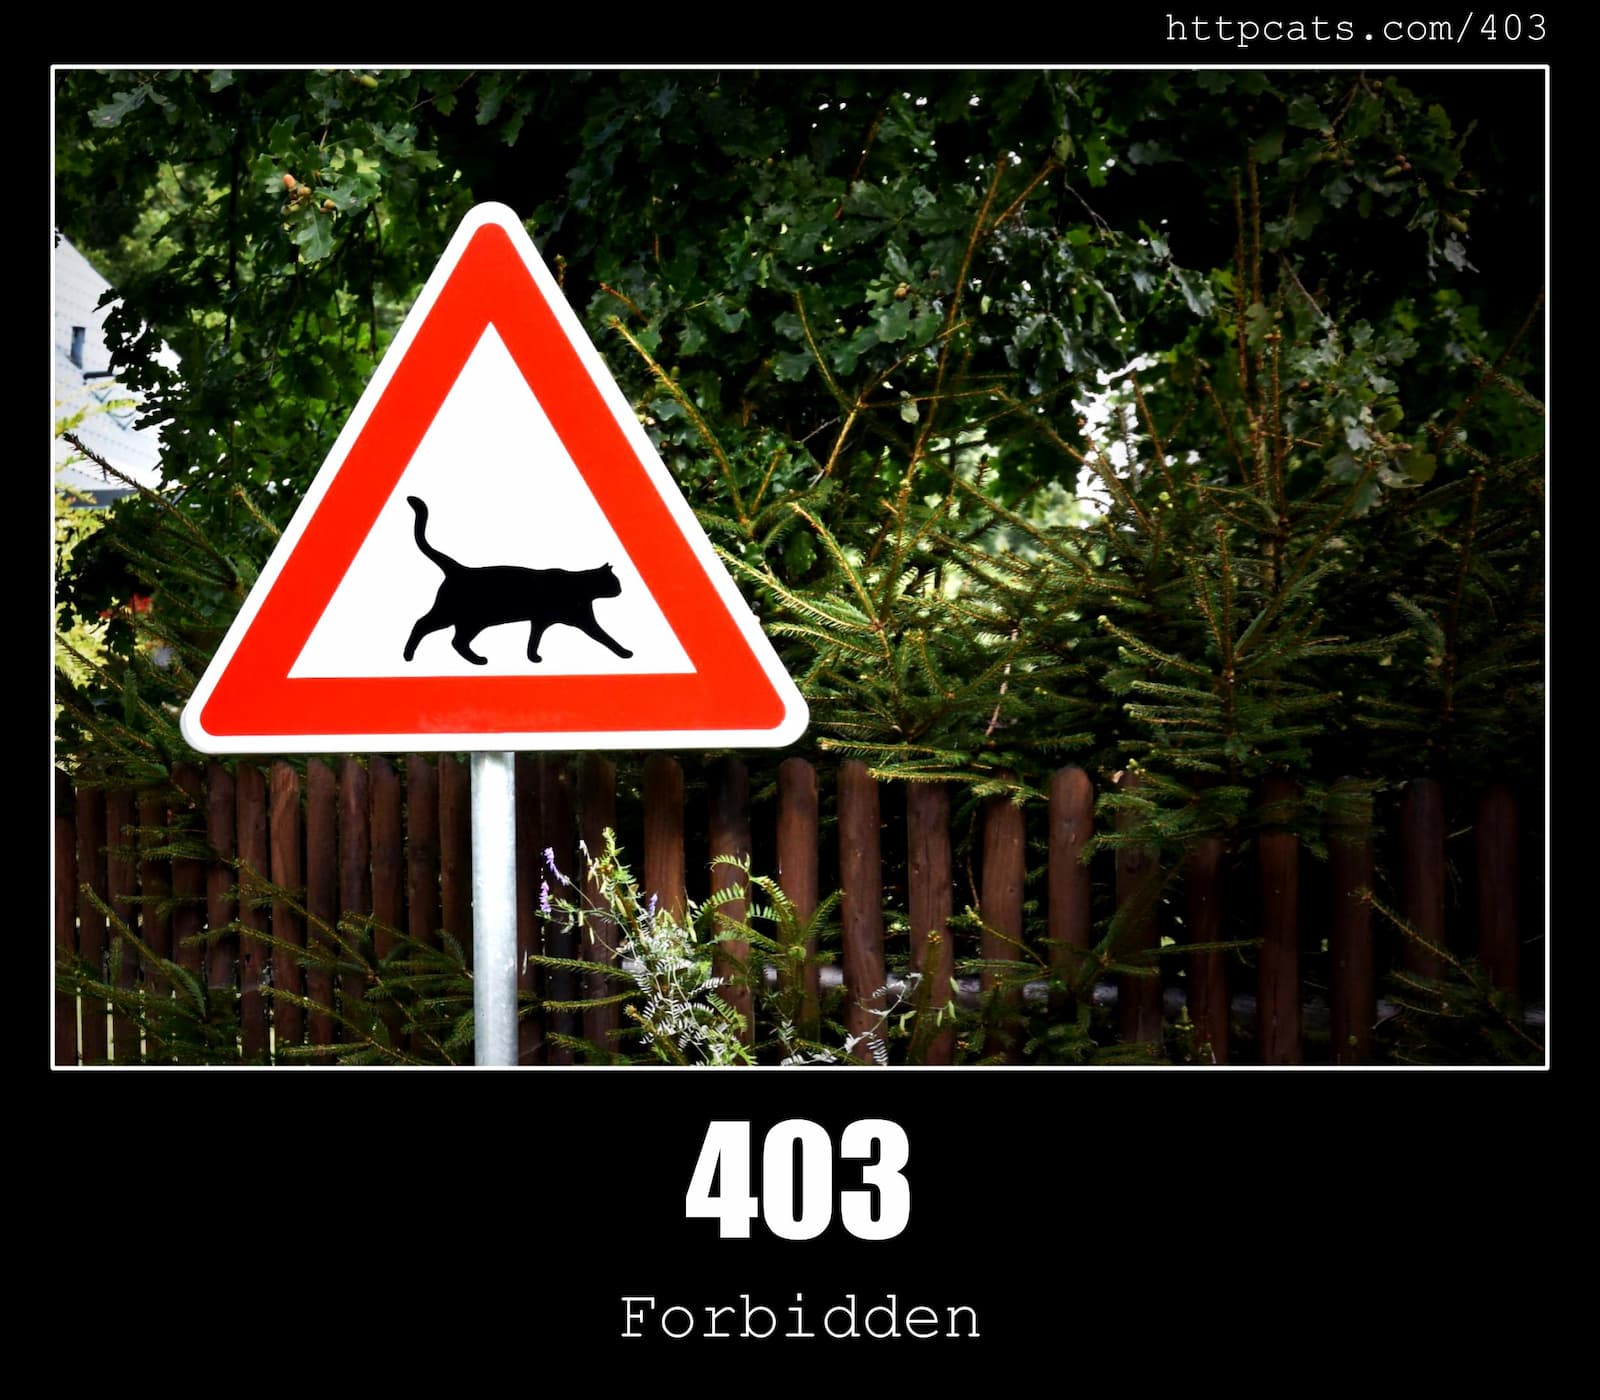 HTTP Status Code 403 Forbidden & Cats